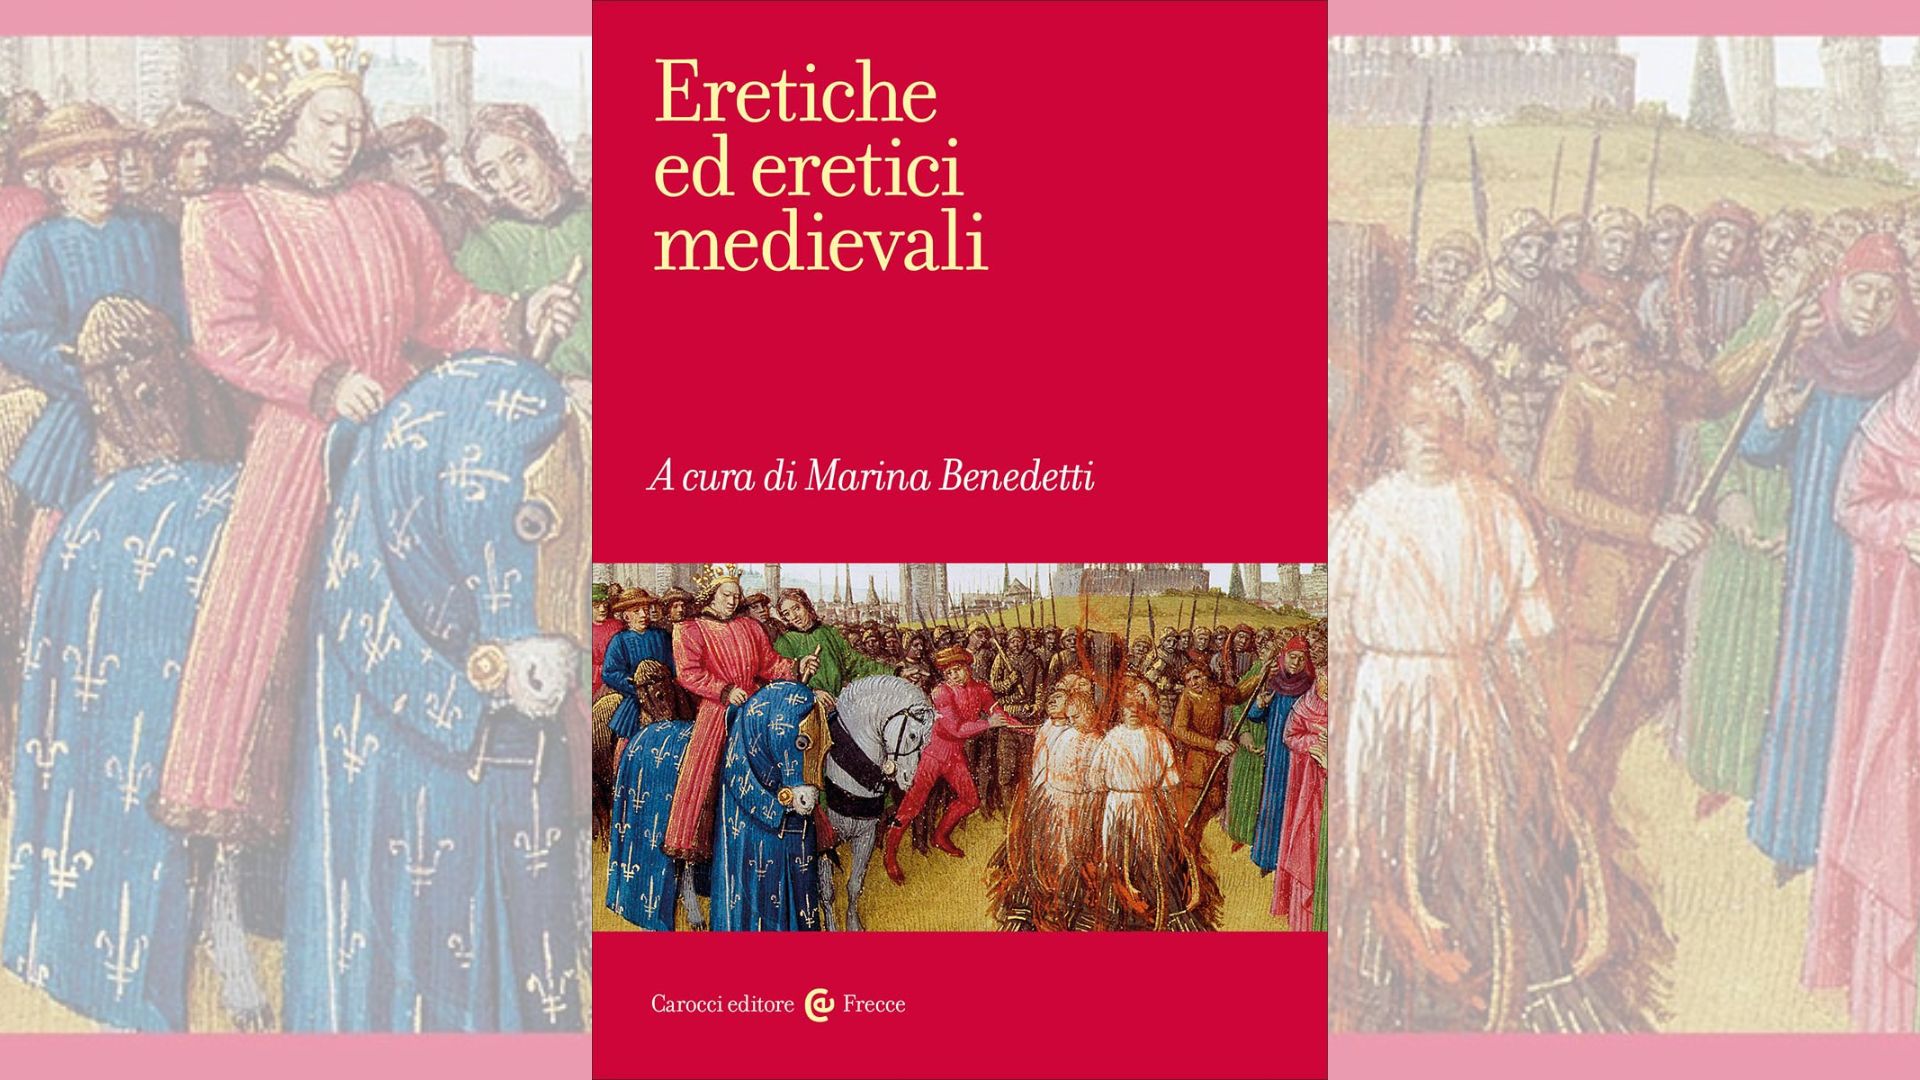 Vai alla pagina Eretiche ed eretici medievali